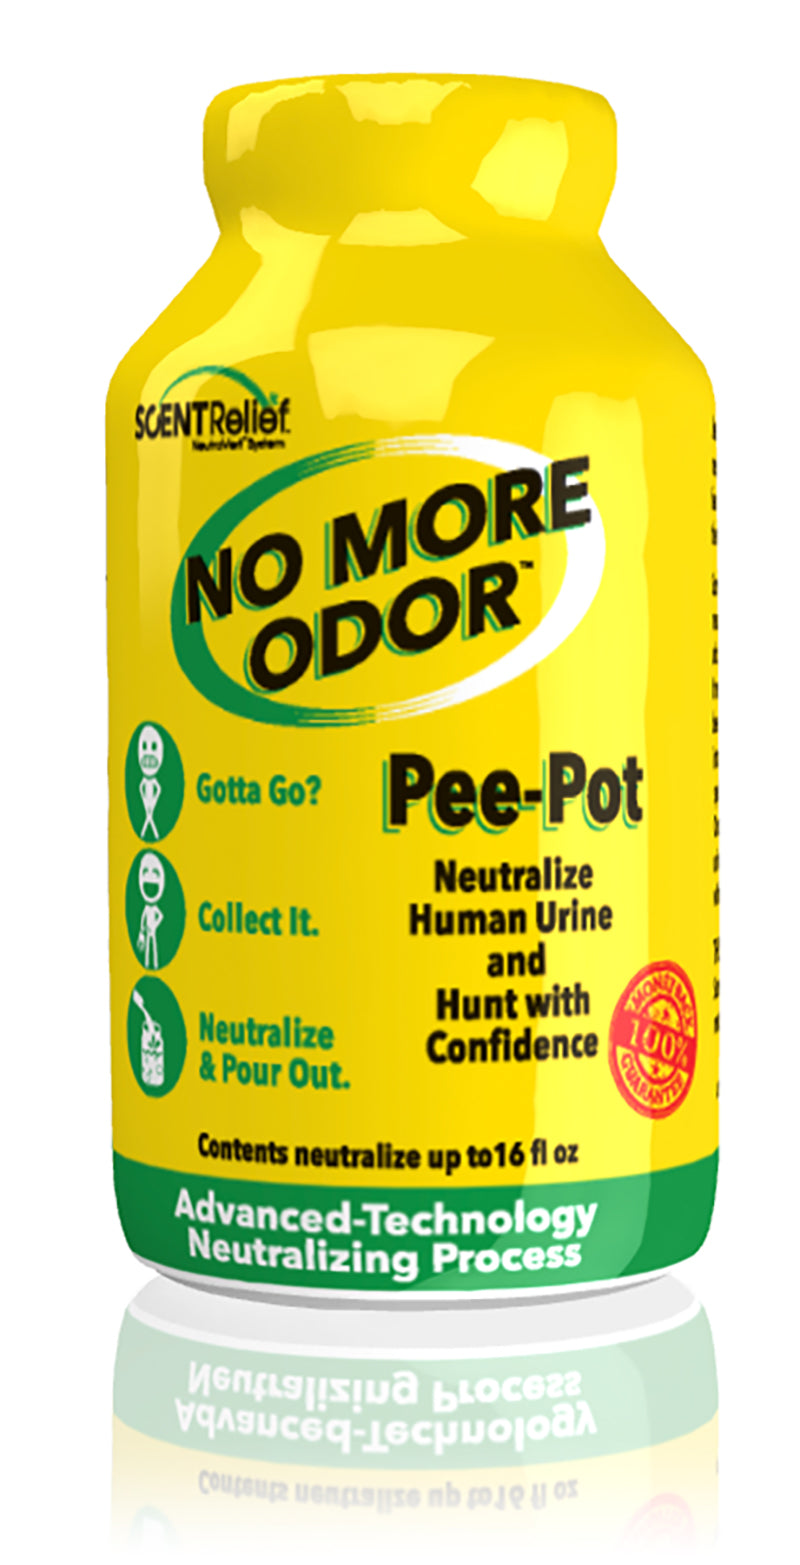 Scent Relief No More Odor Pee Pot